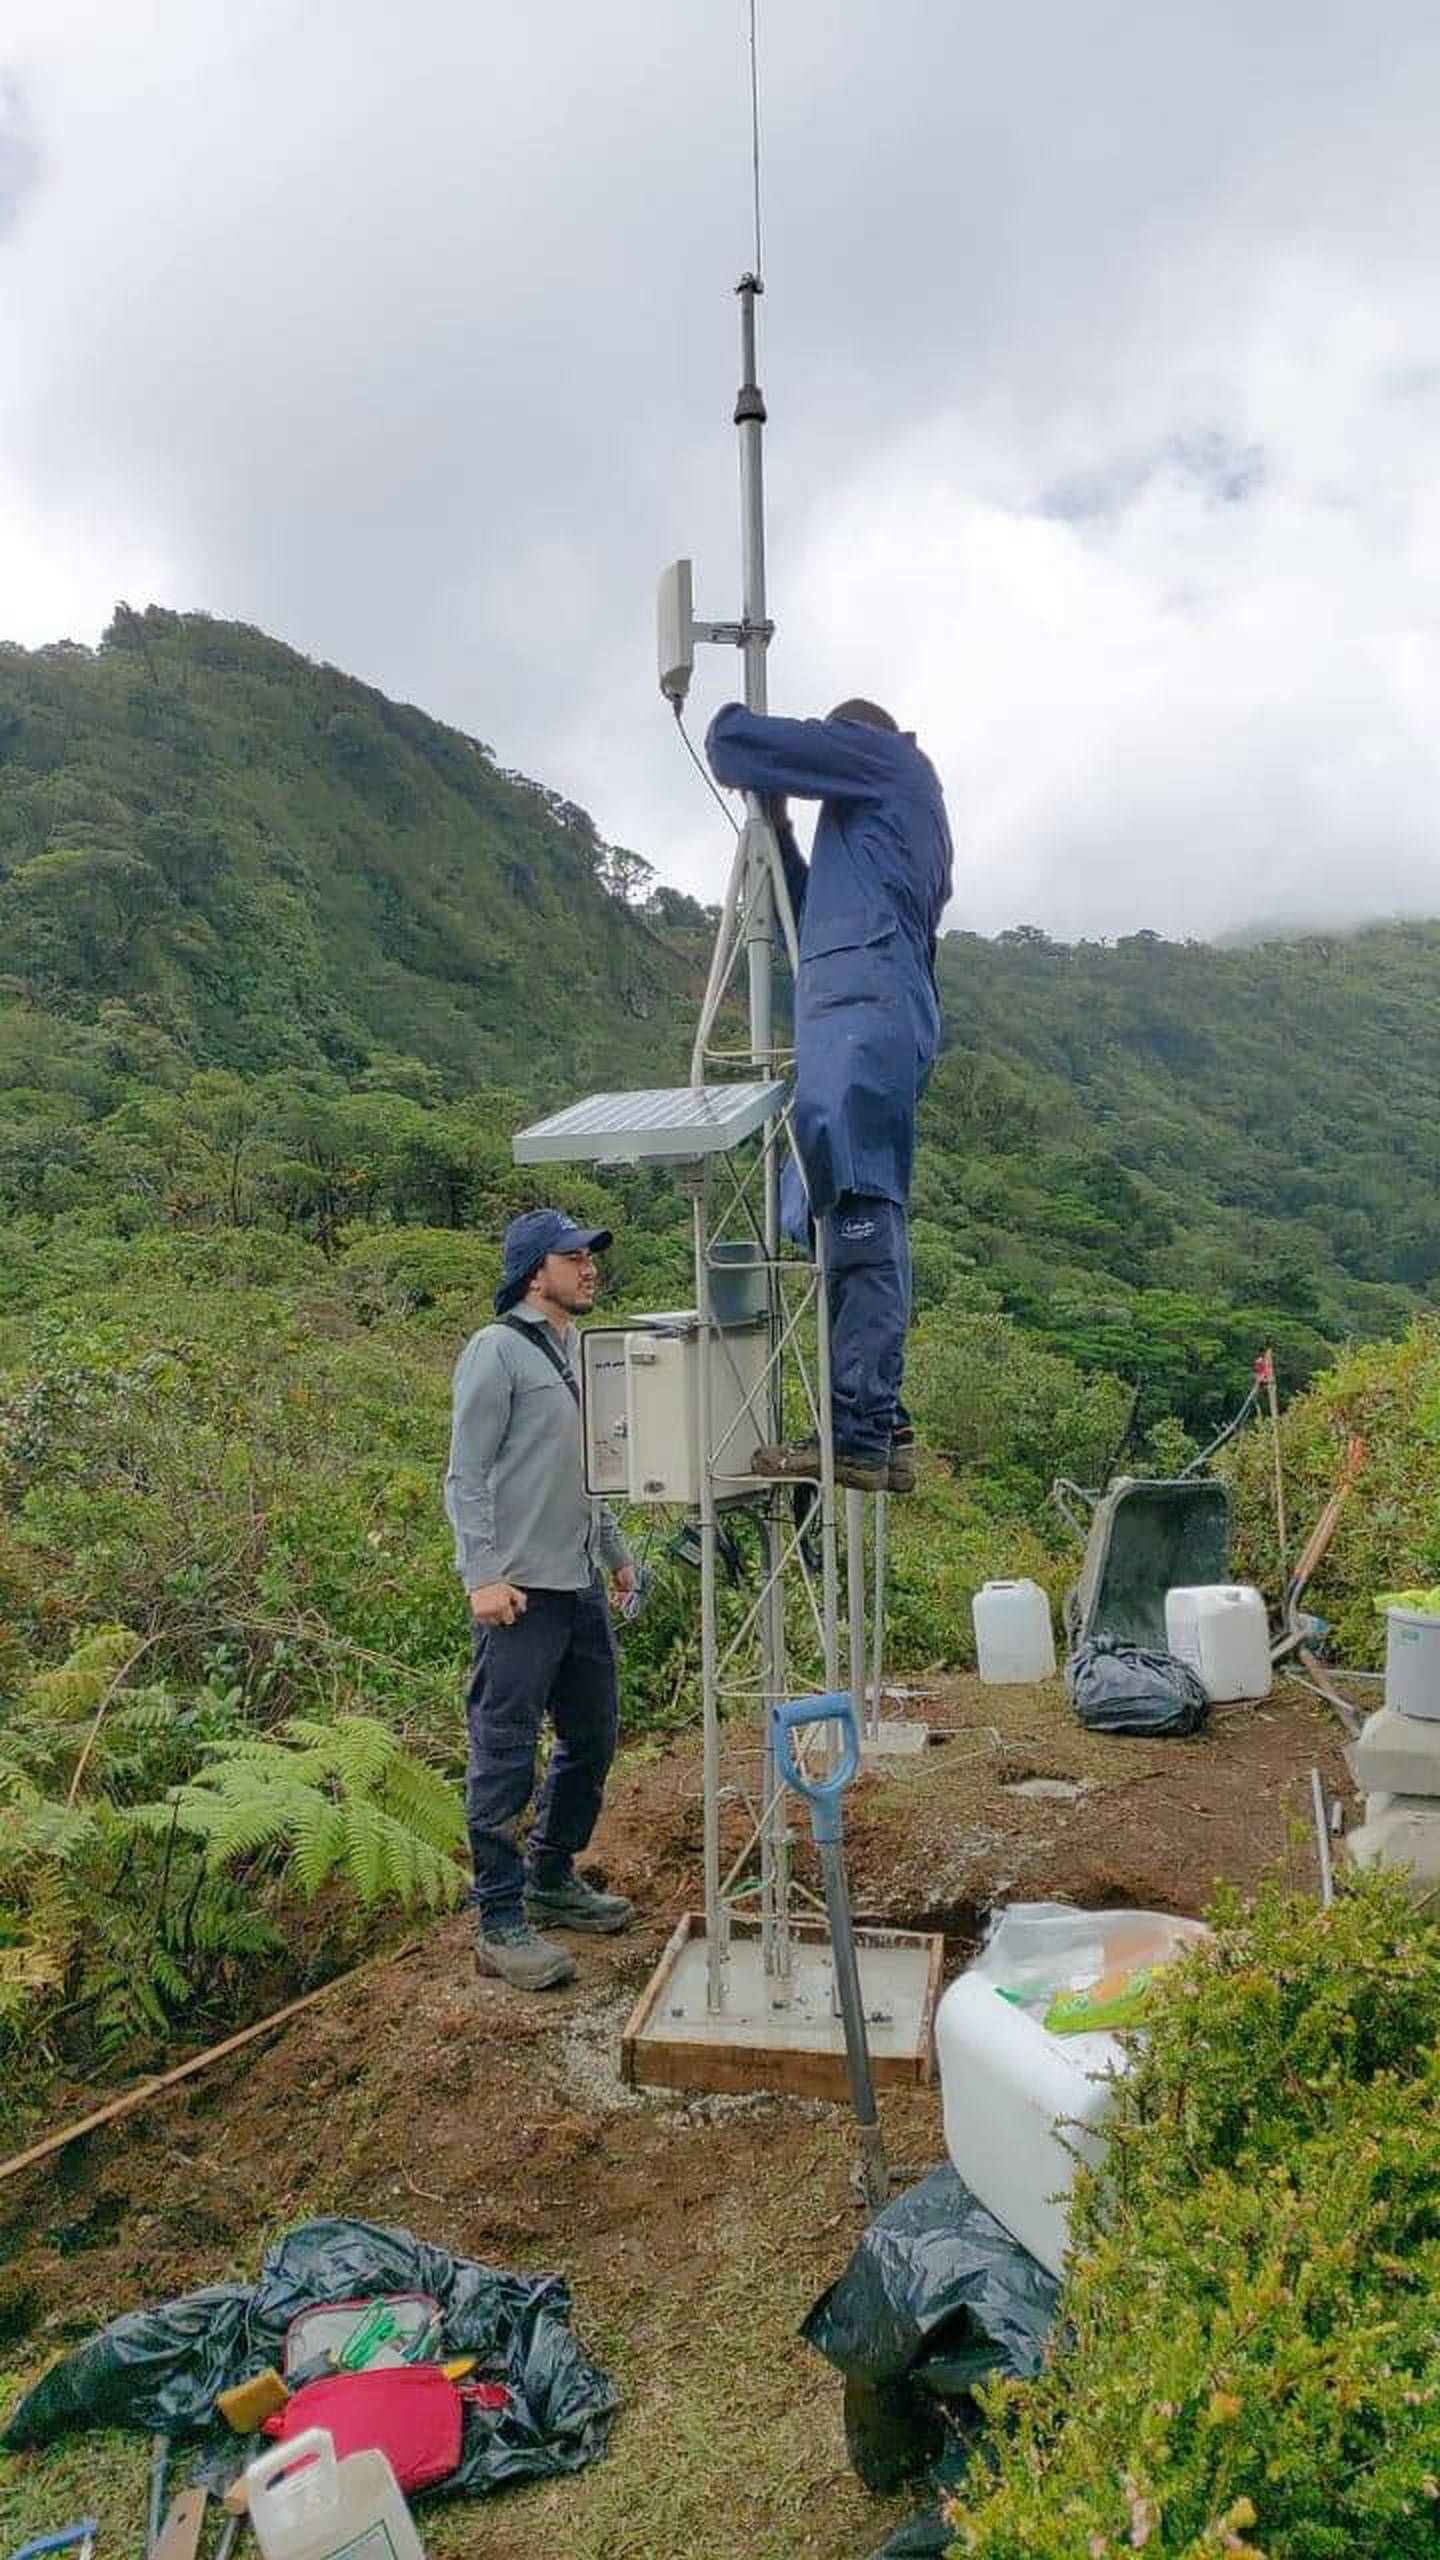 Este 16 de agosto, comenzó la instalación de una estación meteorológica cerca de la cuenca del Parque Nacional Juan Castro Blanco, afectada por el deslizamiento. Foto: Cortesía Noticias Aguas Zarcas.